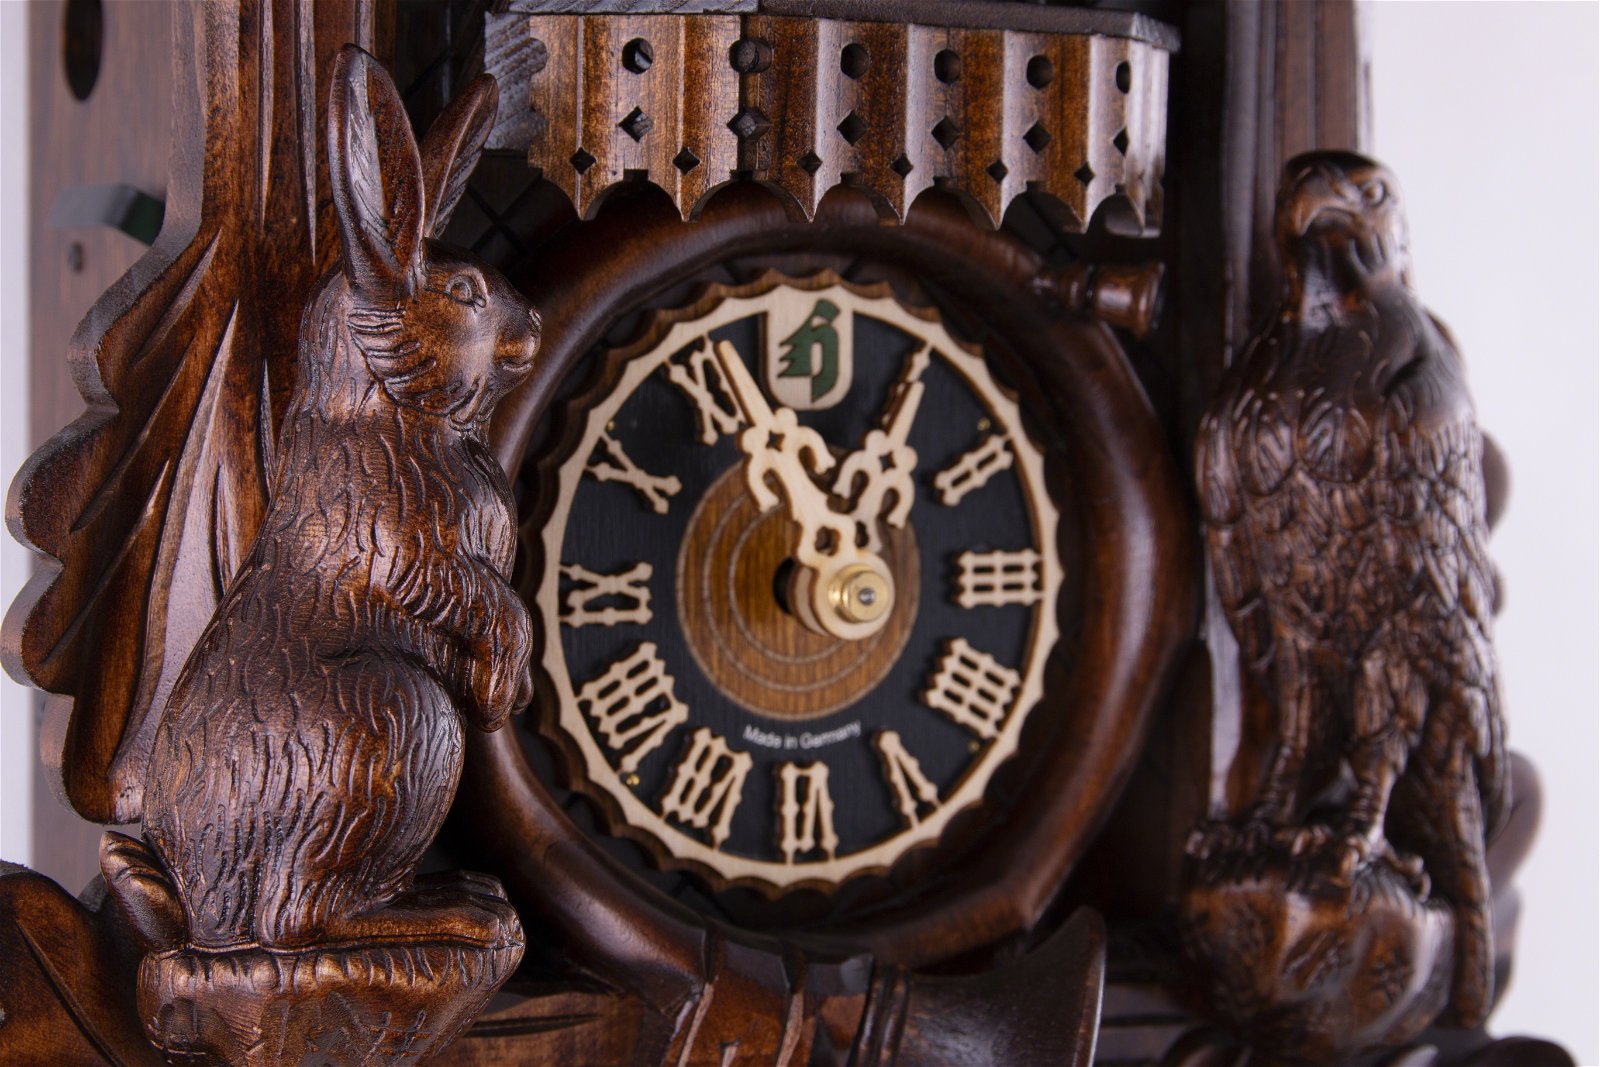 Reloj de cuco estilo “Madera tallada” movimiento mecánico de 1 día 50cm de Hönes